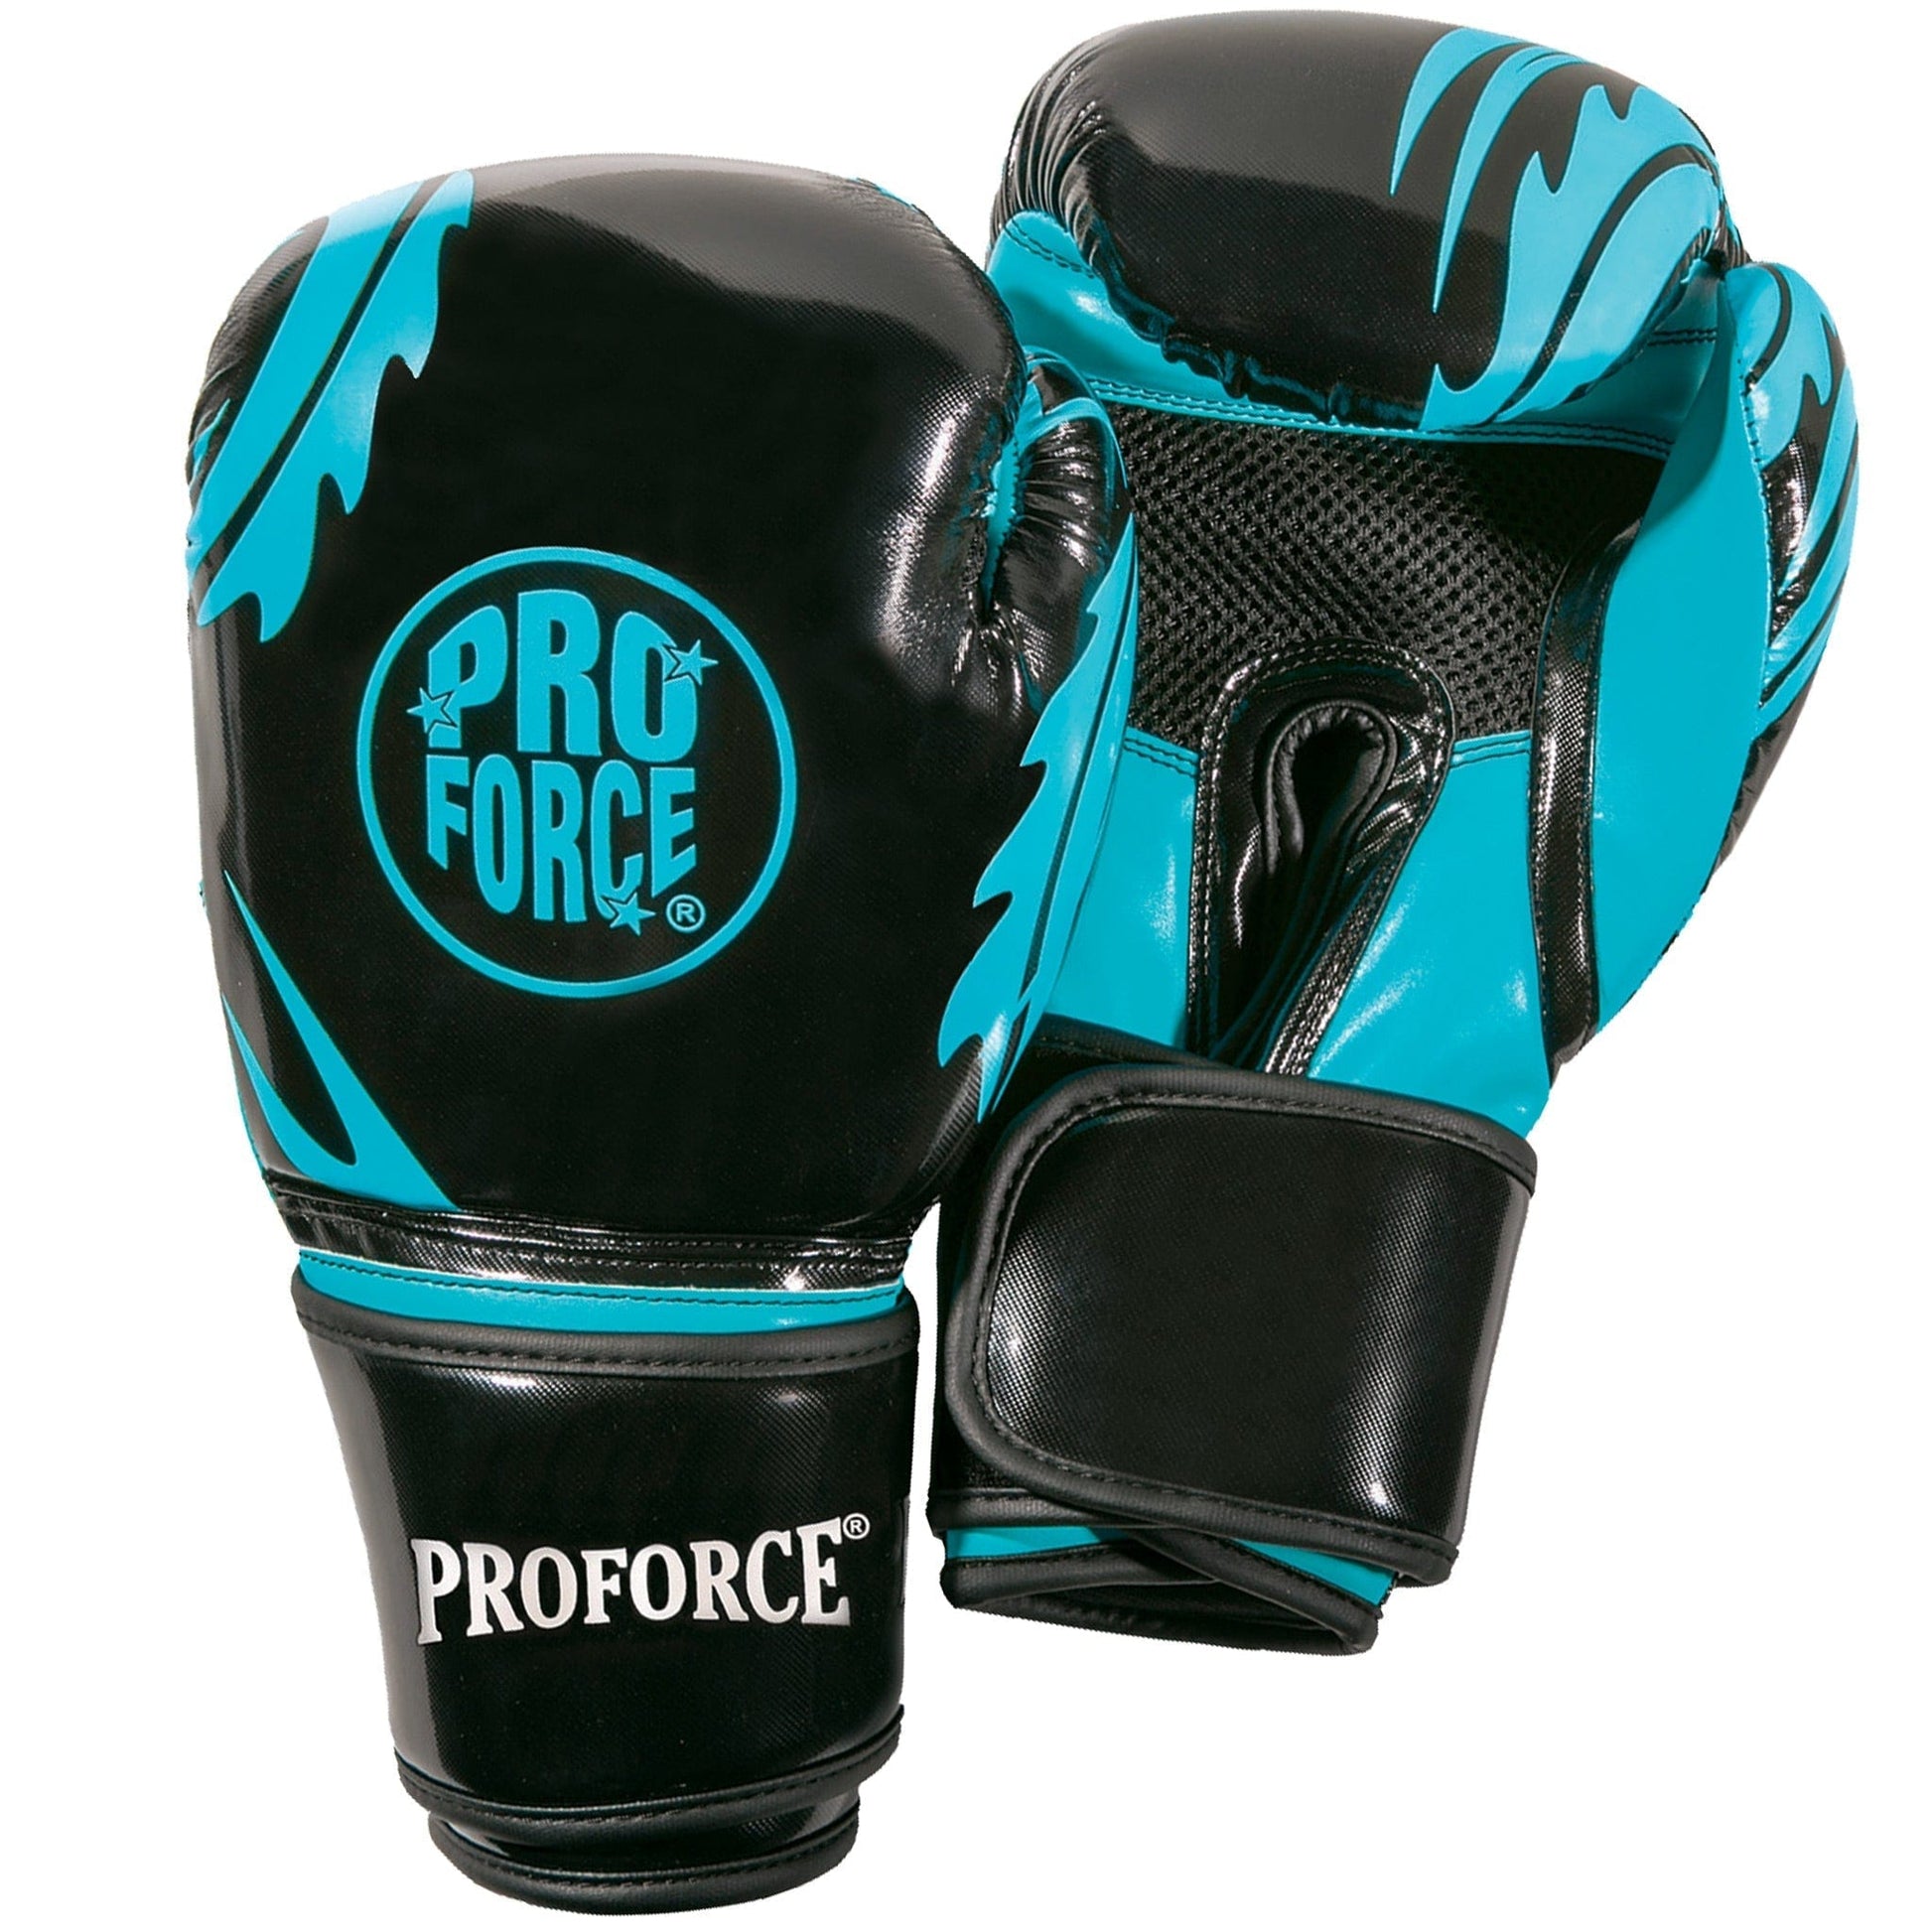 Proforce Boxing black/turquoise ProForce Combat Boxing Training Glove - 12 oz